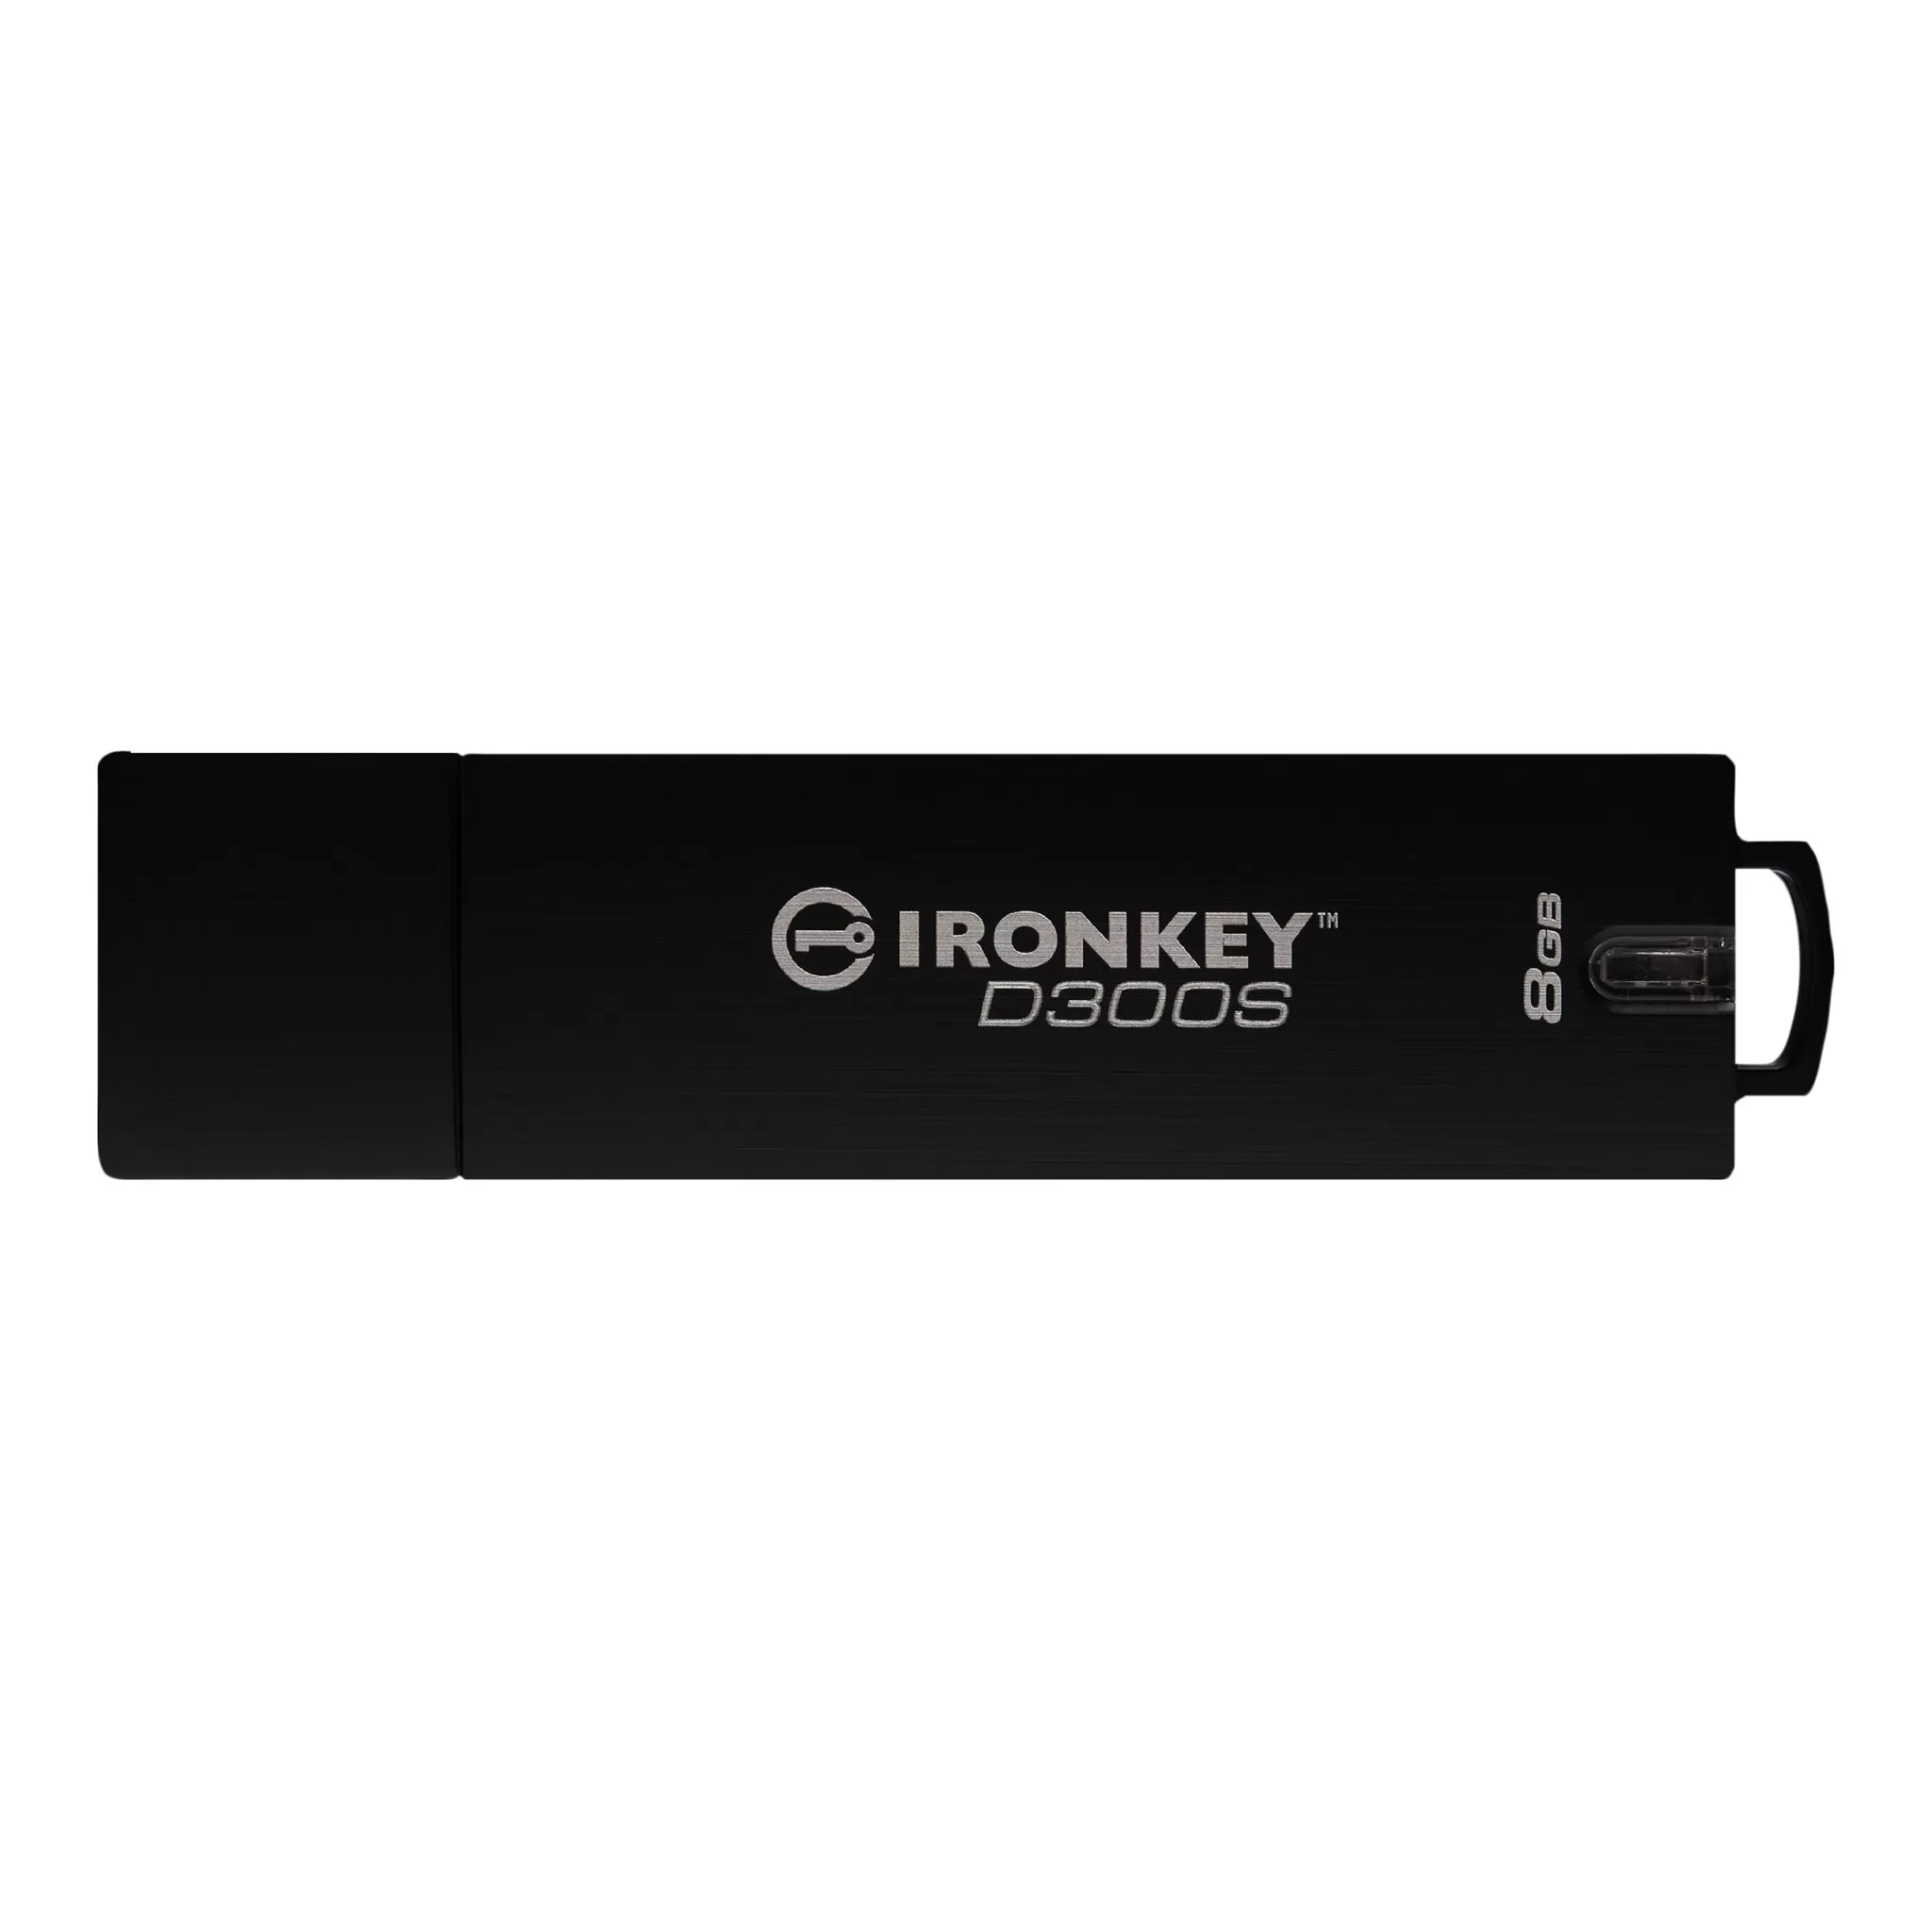 Flash Drive Kingston IronKey D300S 8GB USB 3.0